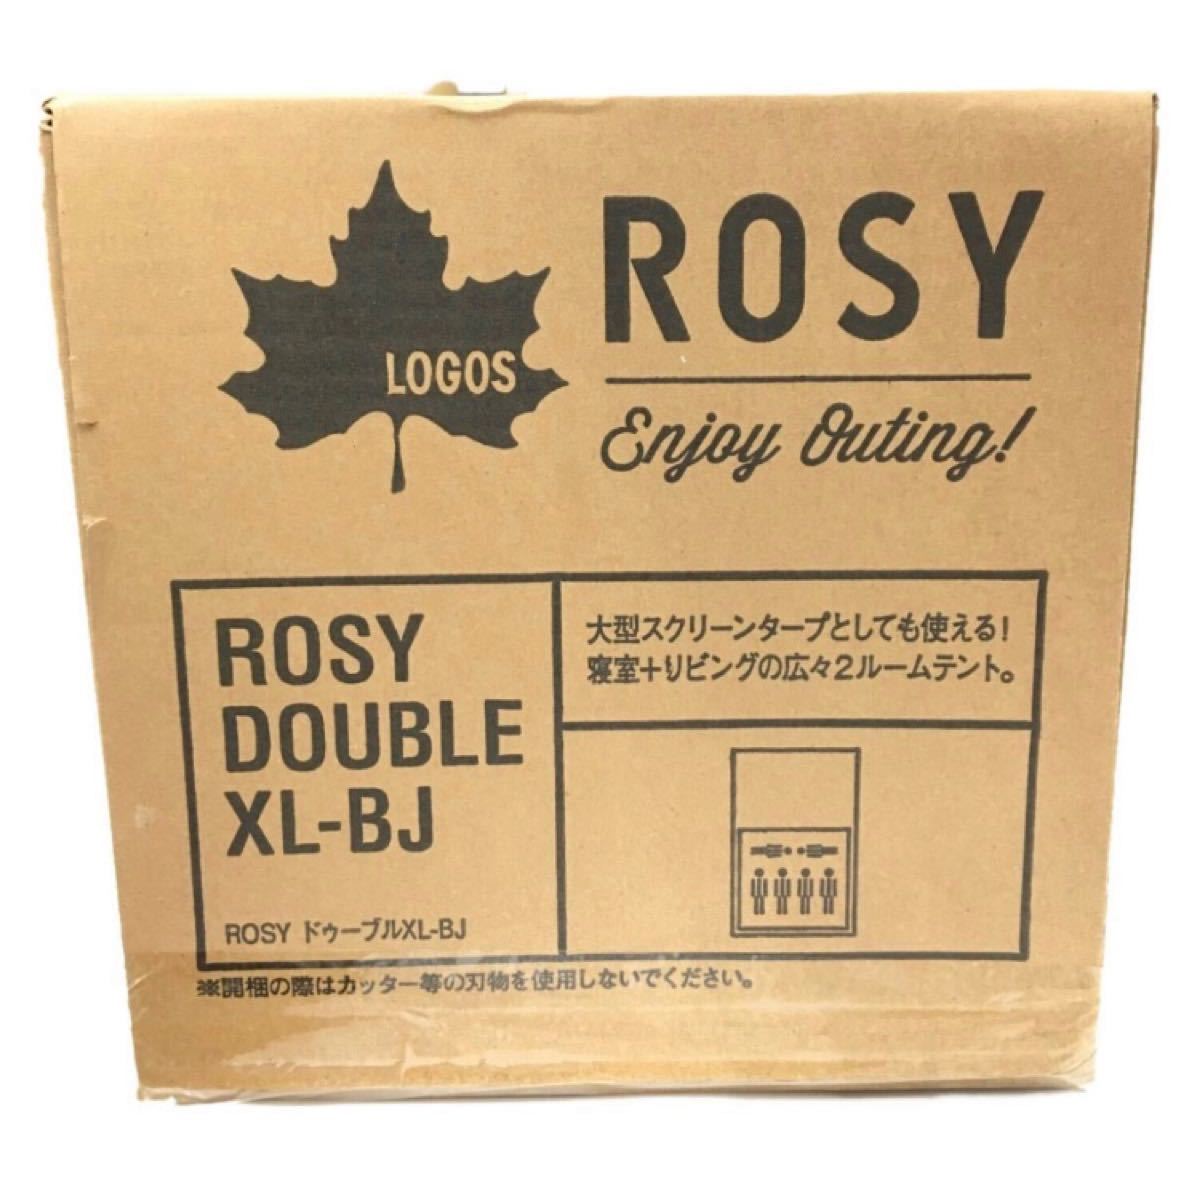 新品未開封 LOGOS ロゴス ROSY ロジー DOUBLE ドゥーブル XL-BJ 2